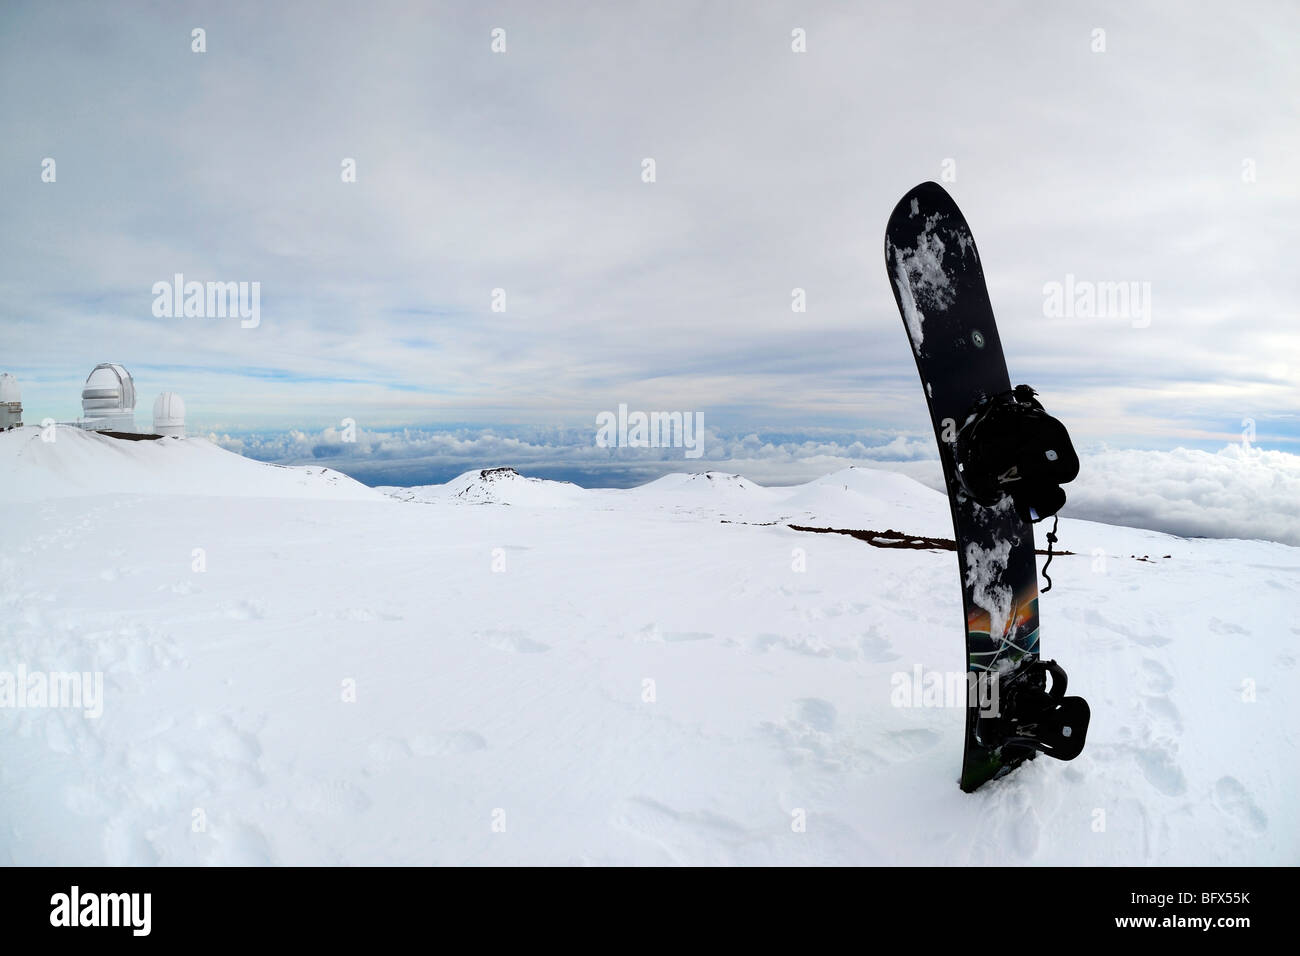 snowboard, Mauna Kea volcano, Highest point in Hawaii, 13796', The Big Island of Hawaii Stock Photo